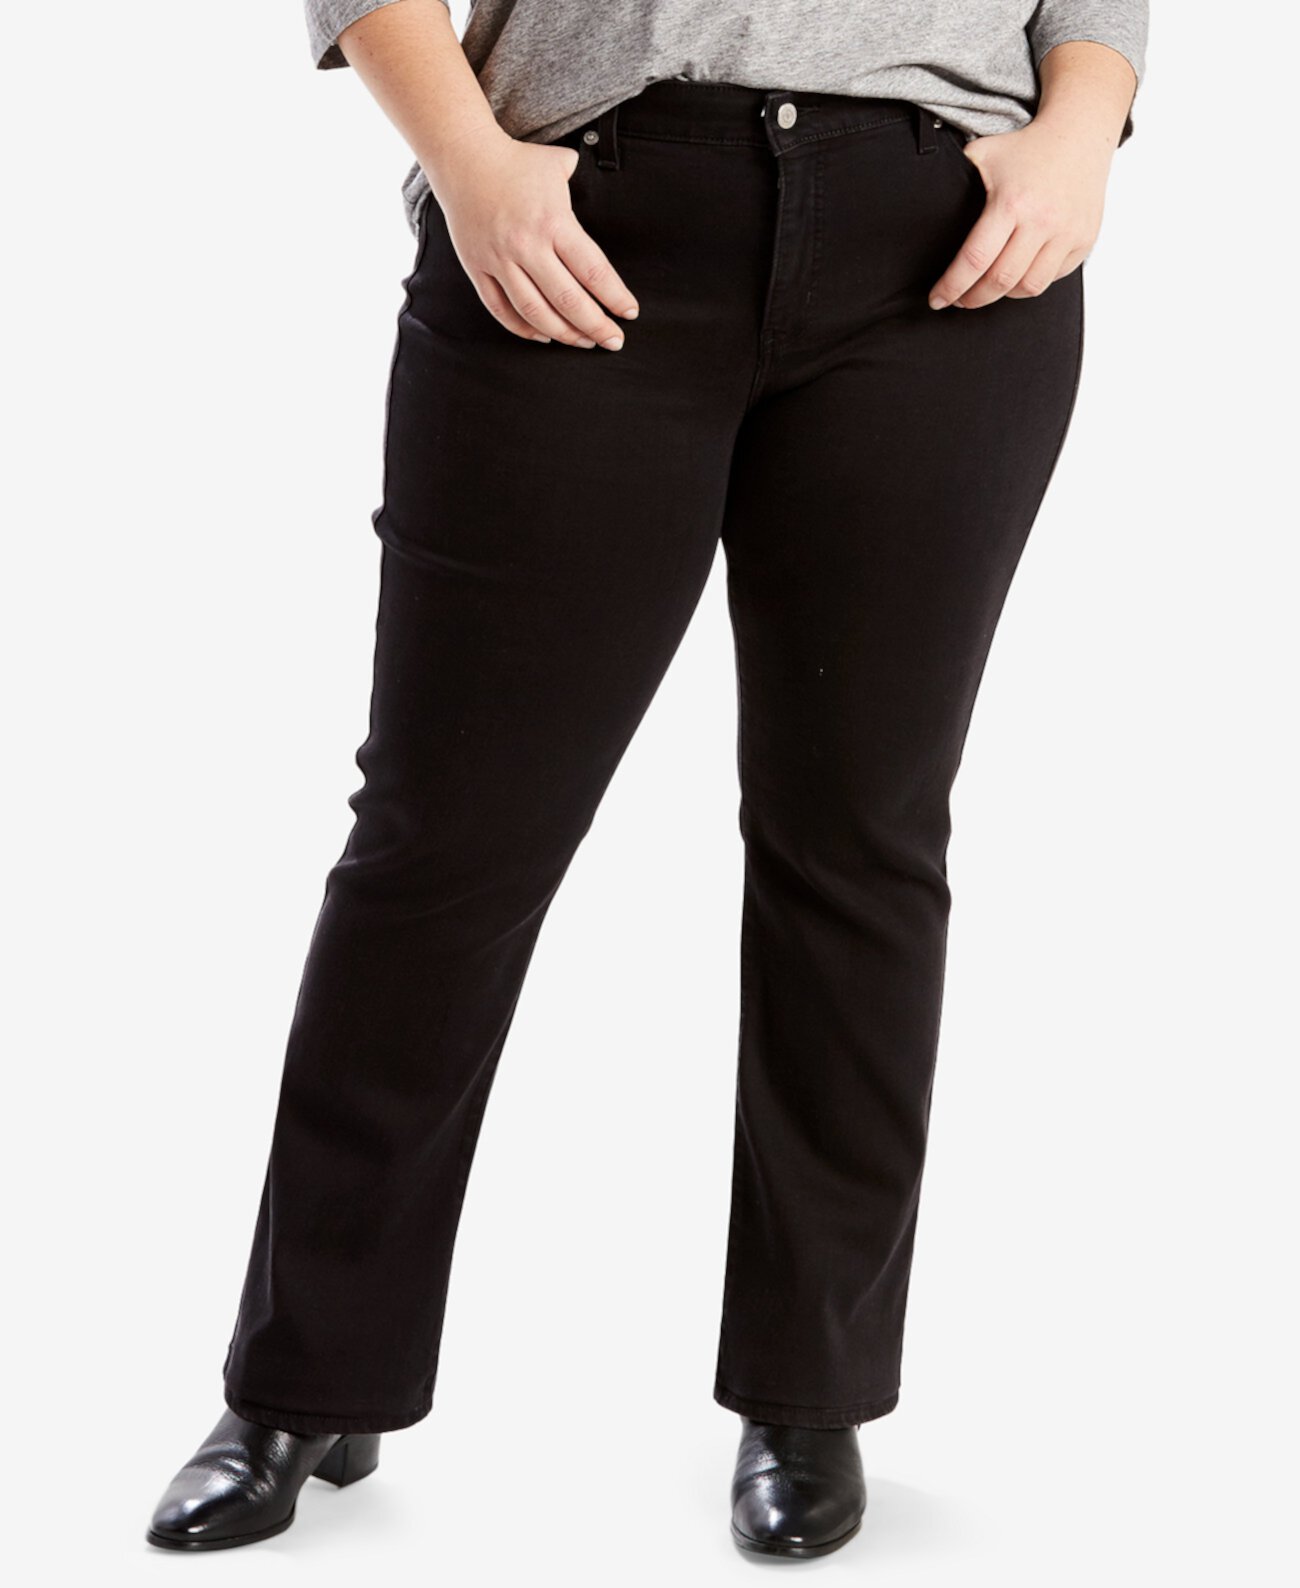 Модные классические прямые джинсы больших размеров с прямыми штанинами Levi's®